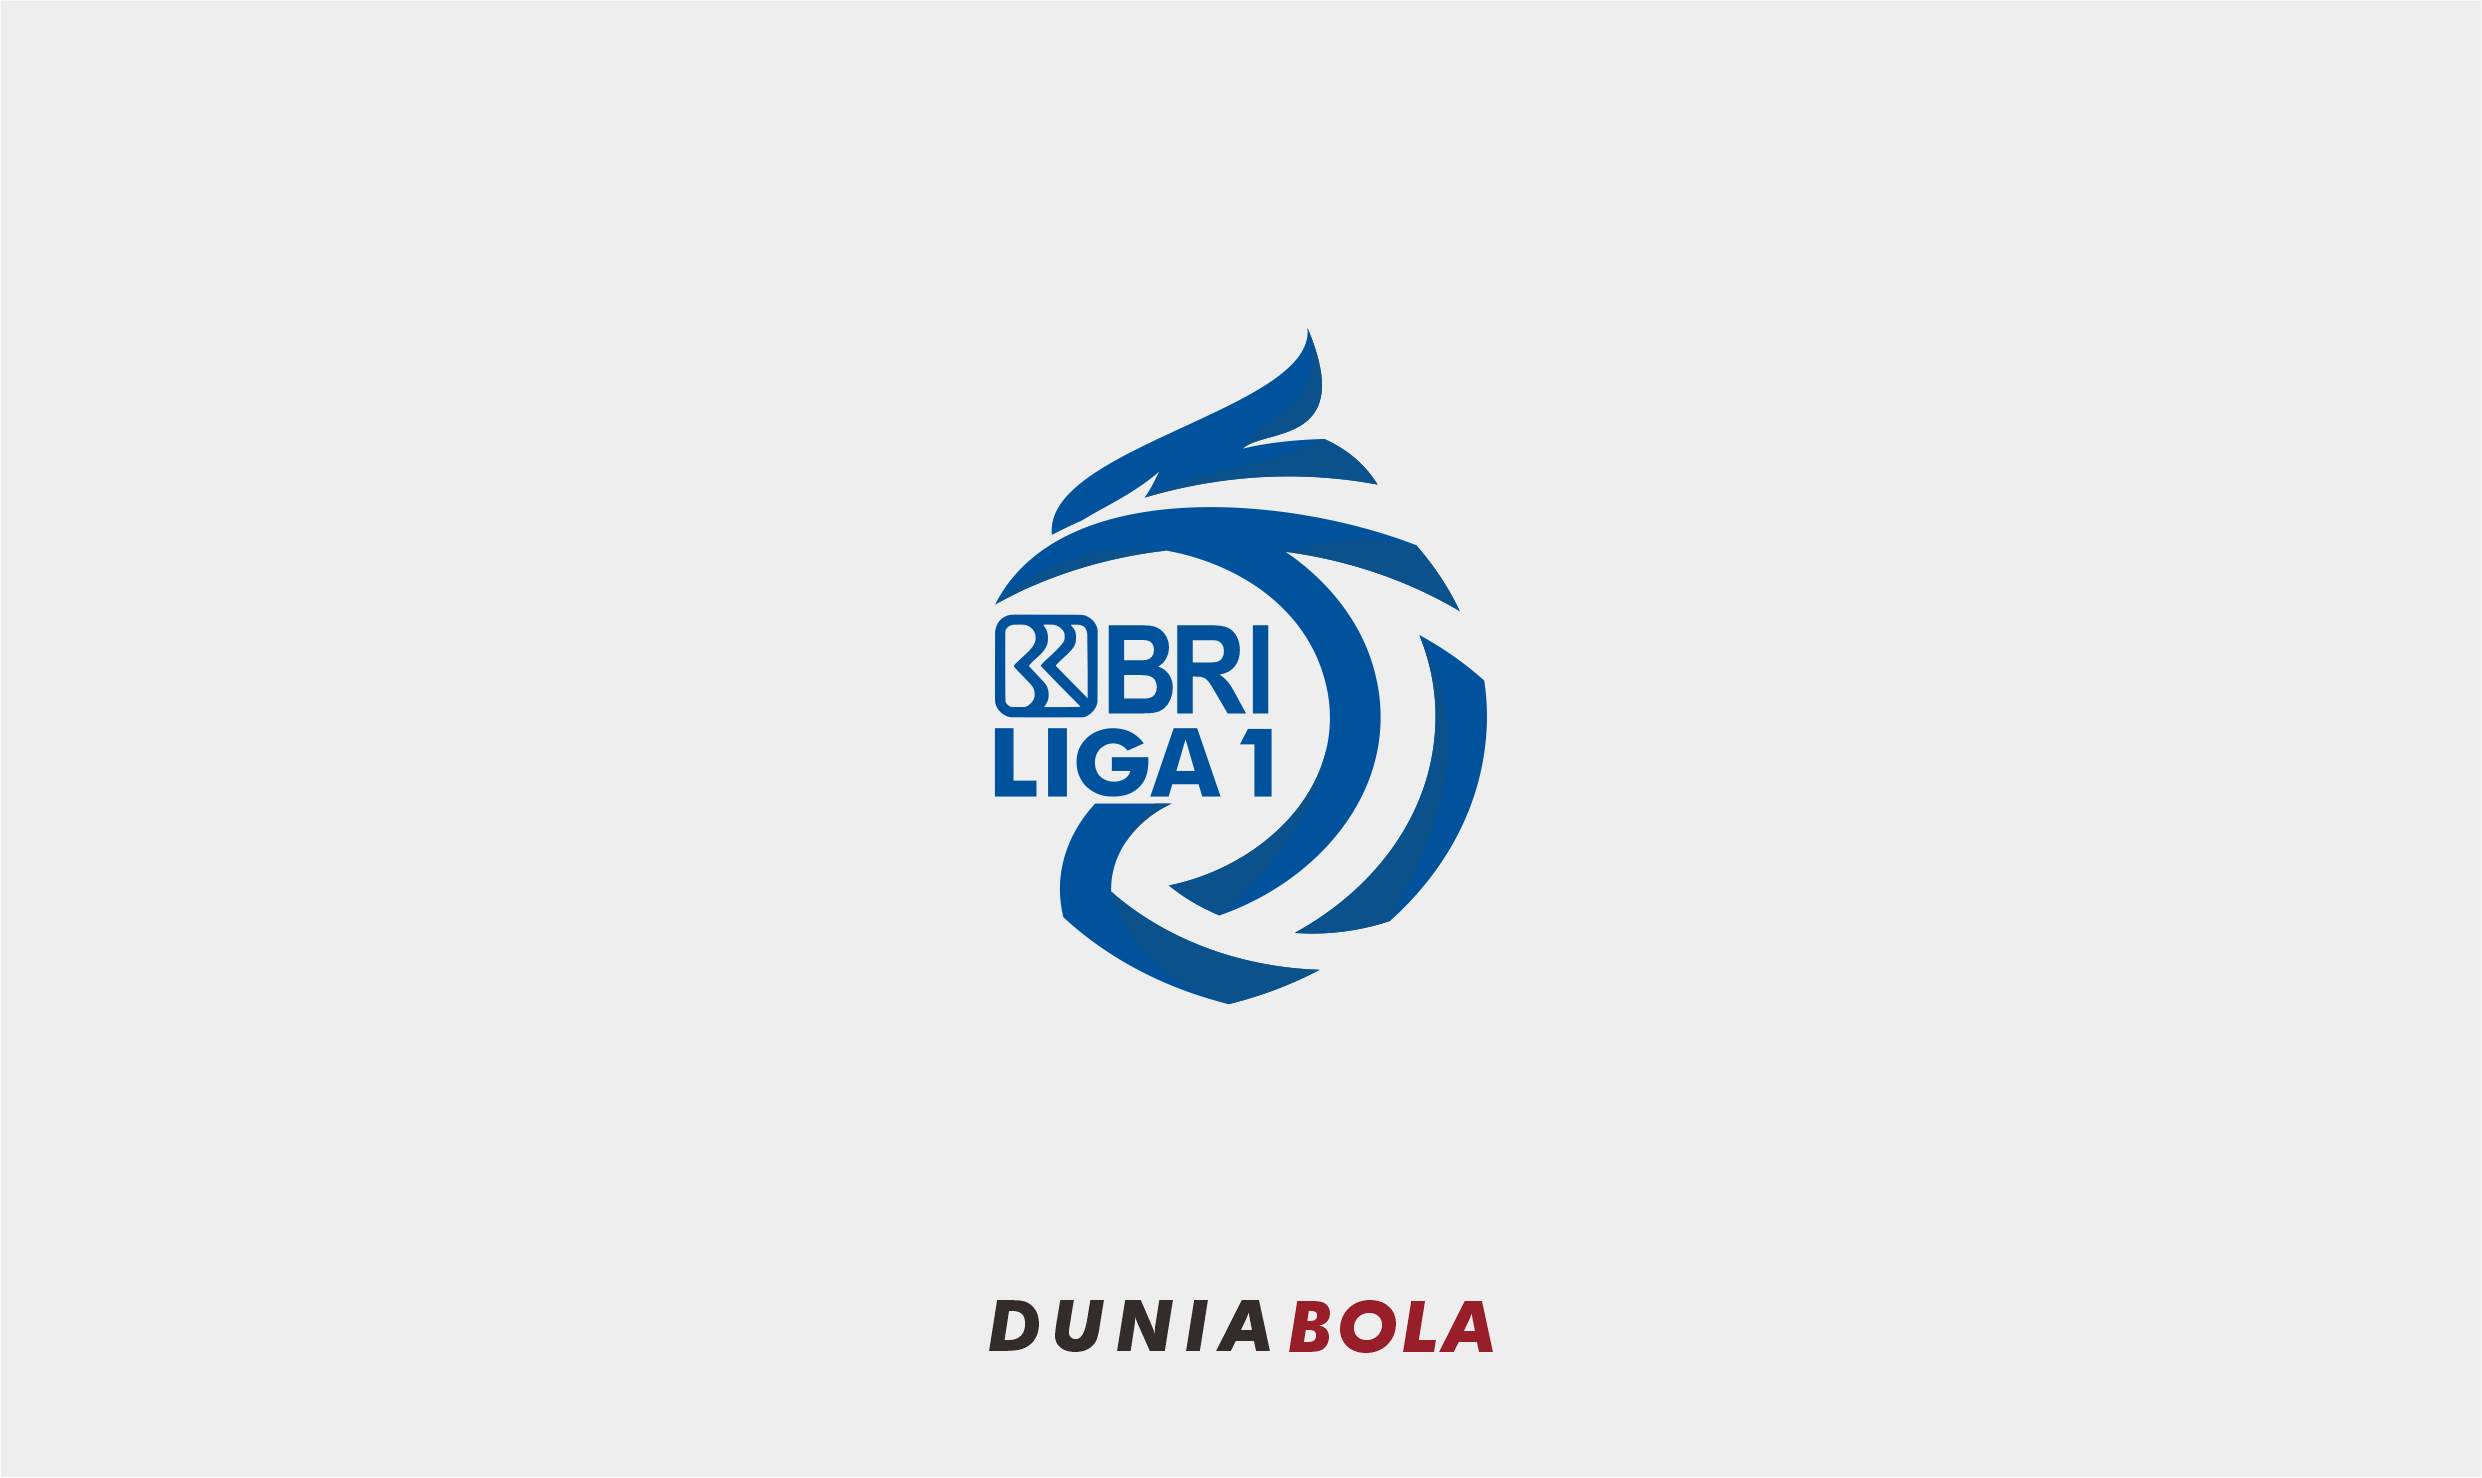 Sejarah dan format kompetisi Liga 1 BRI - Duniabola.id